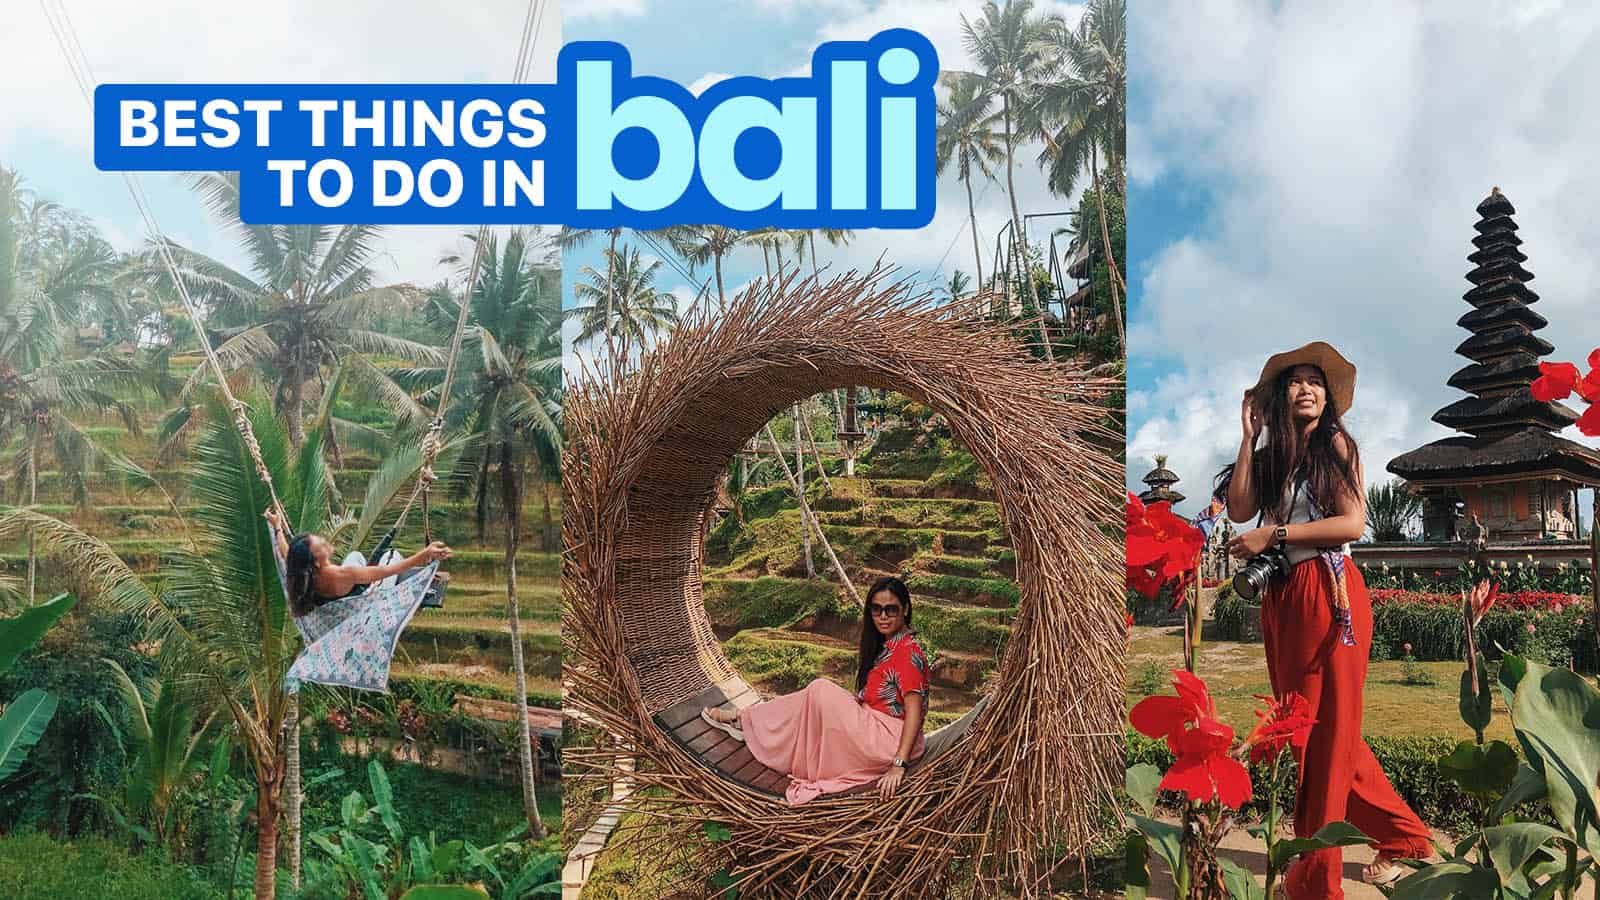 巴厘岛最好的21件事